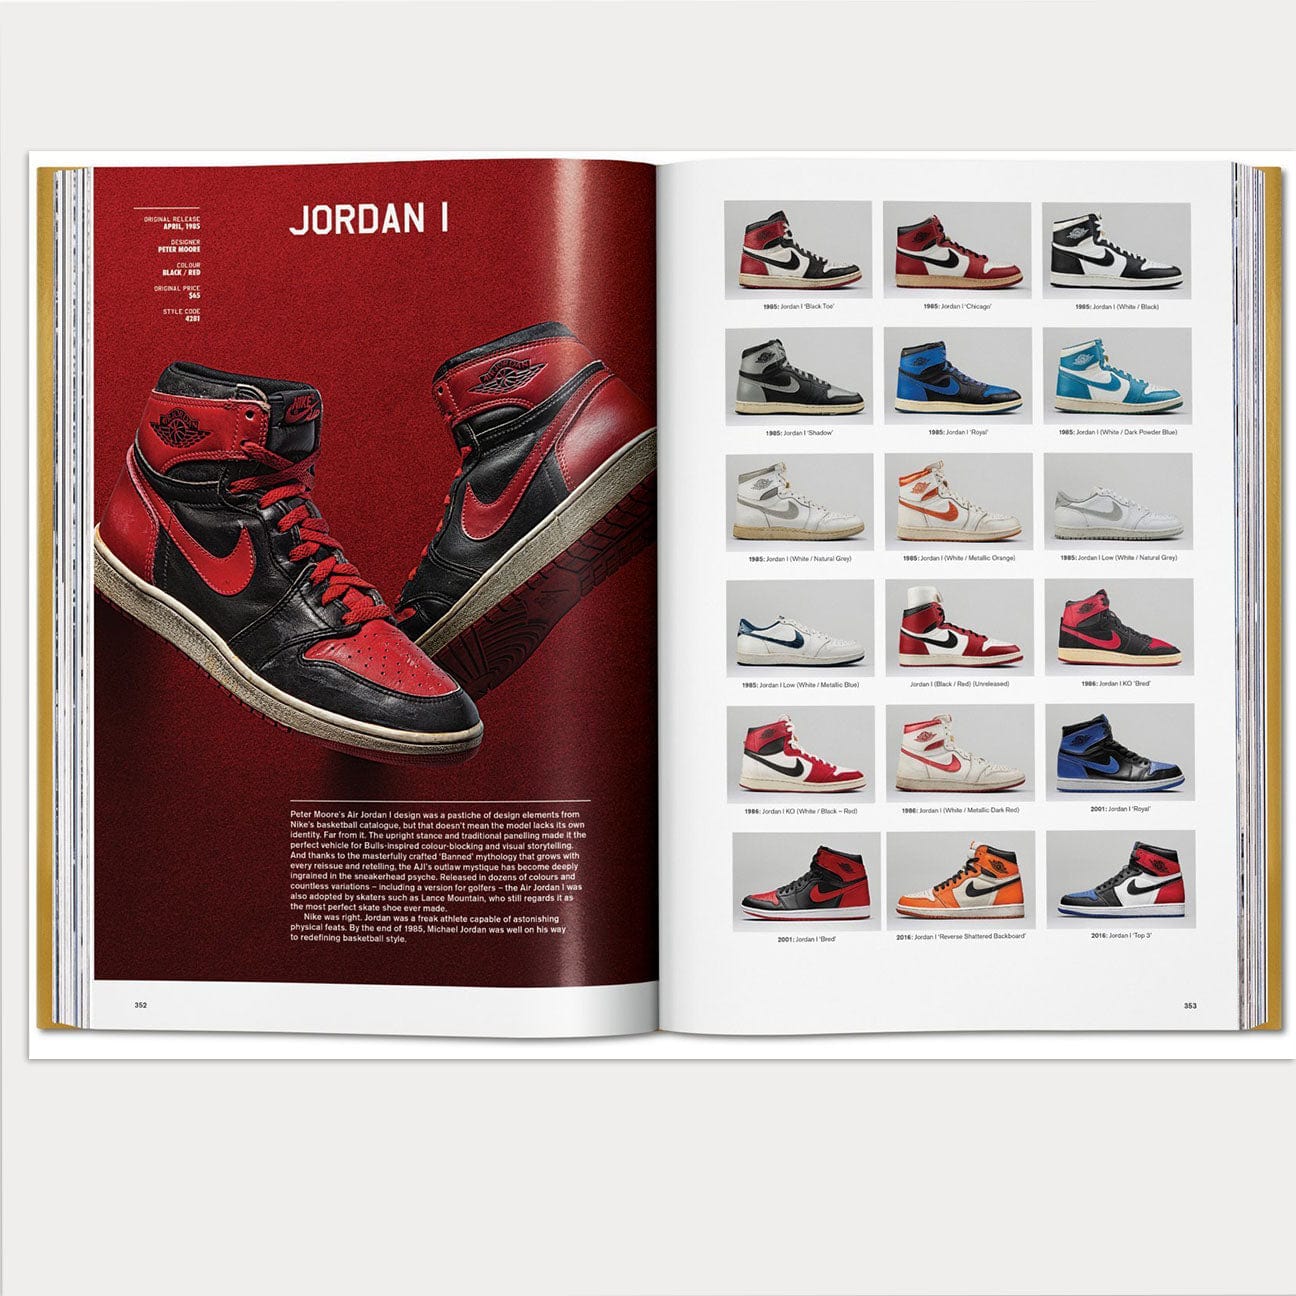 TASCHEN Sneaker Freaker- The Ultimate Sneaker Book